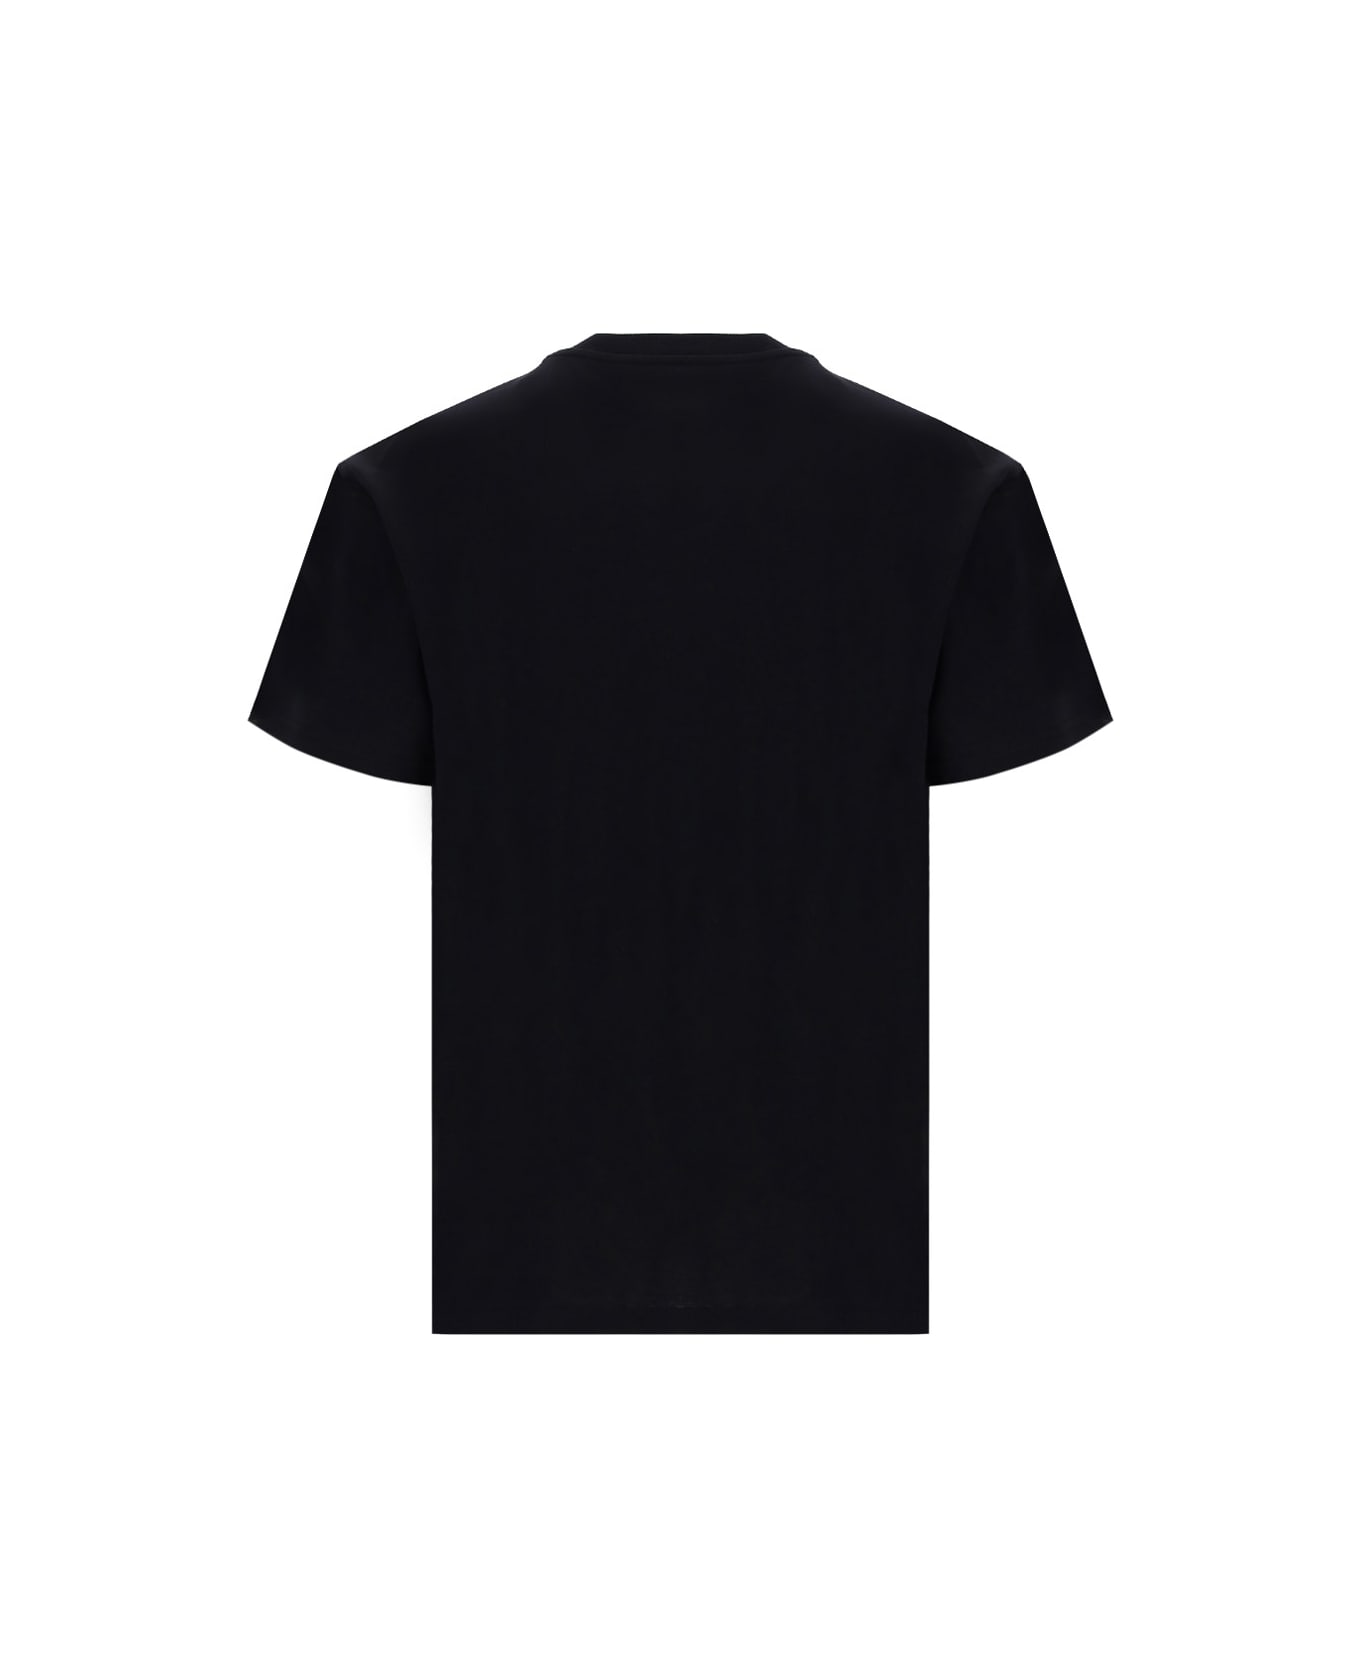 J.W. Anderson T-shirt - BLACK